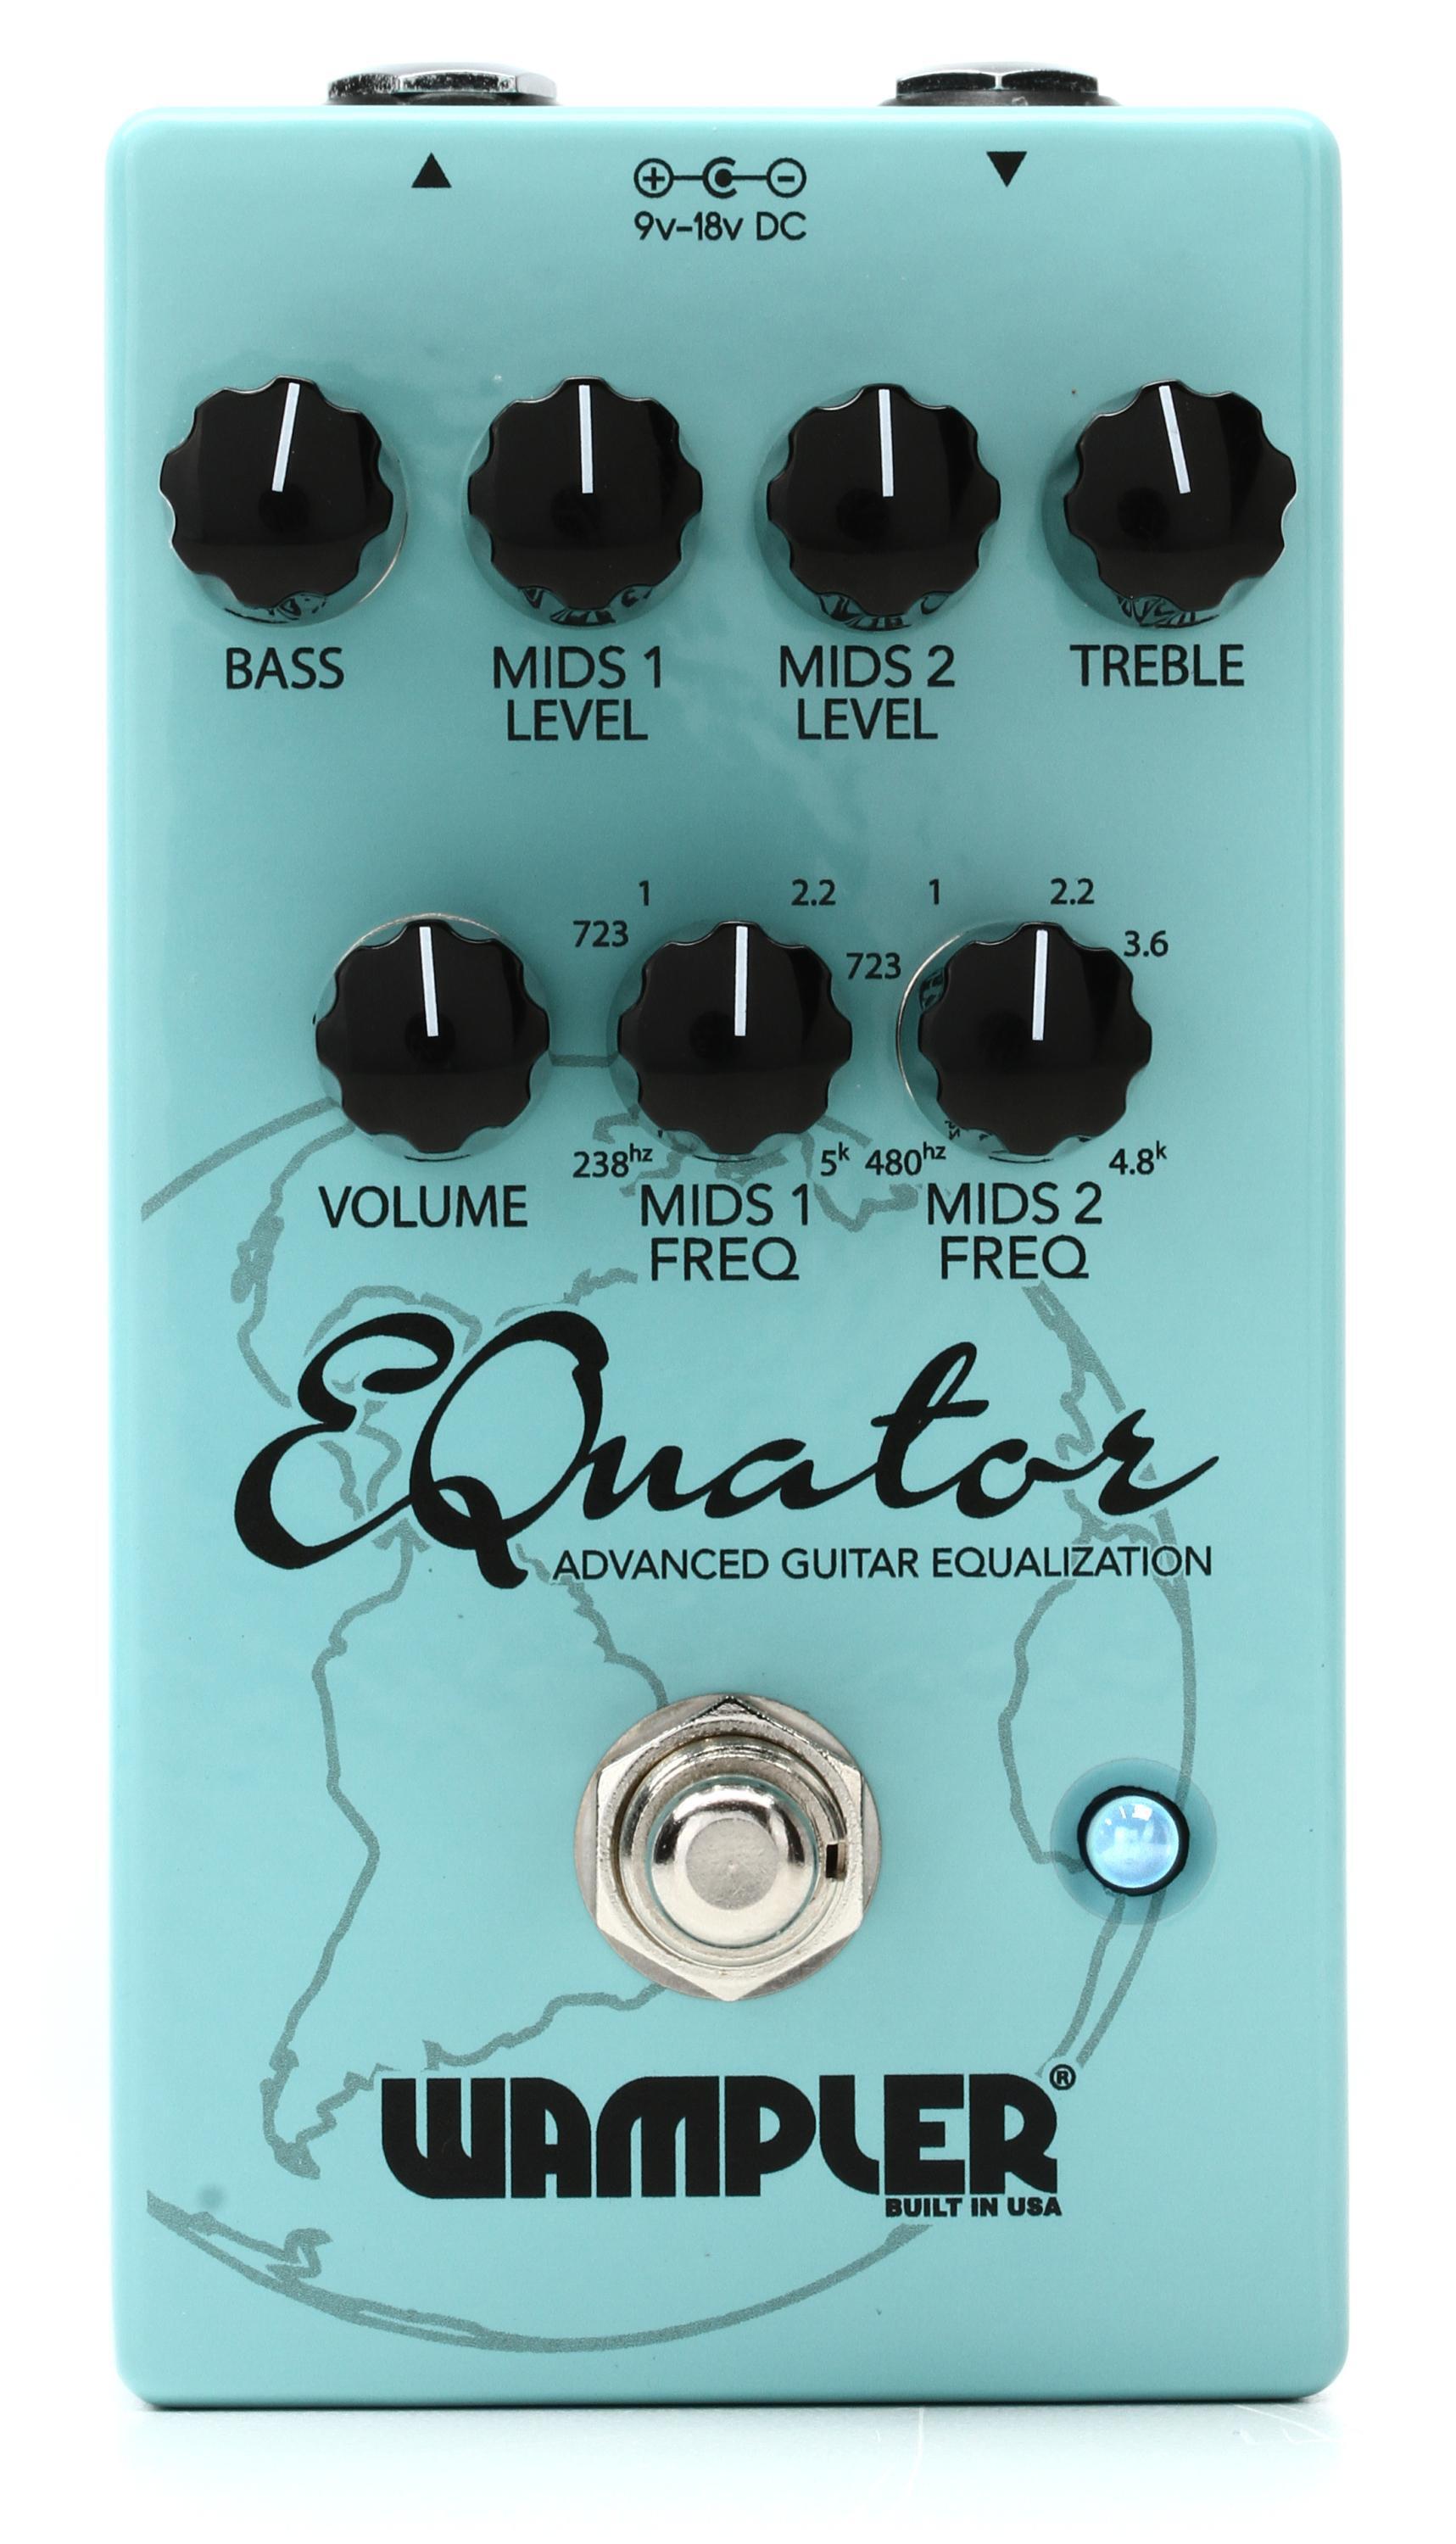 Bundled Item: Wampler EQuator Advanced Guitar Equalization Pedal